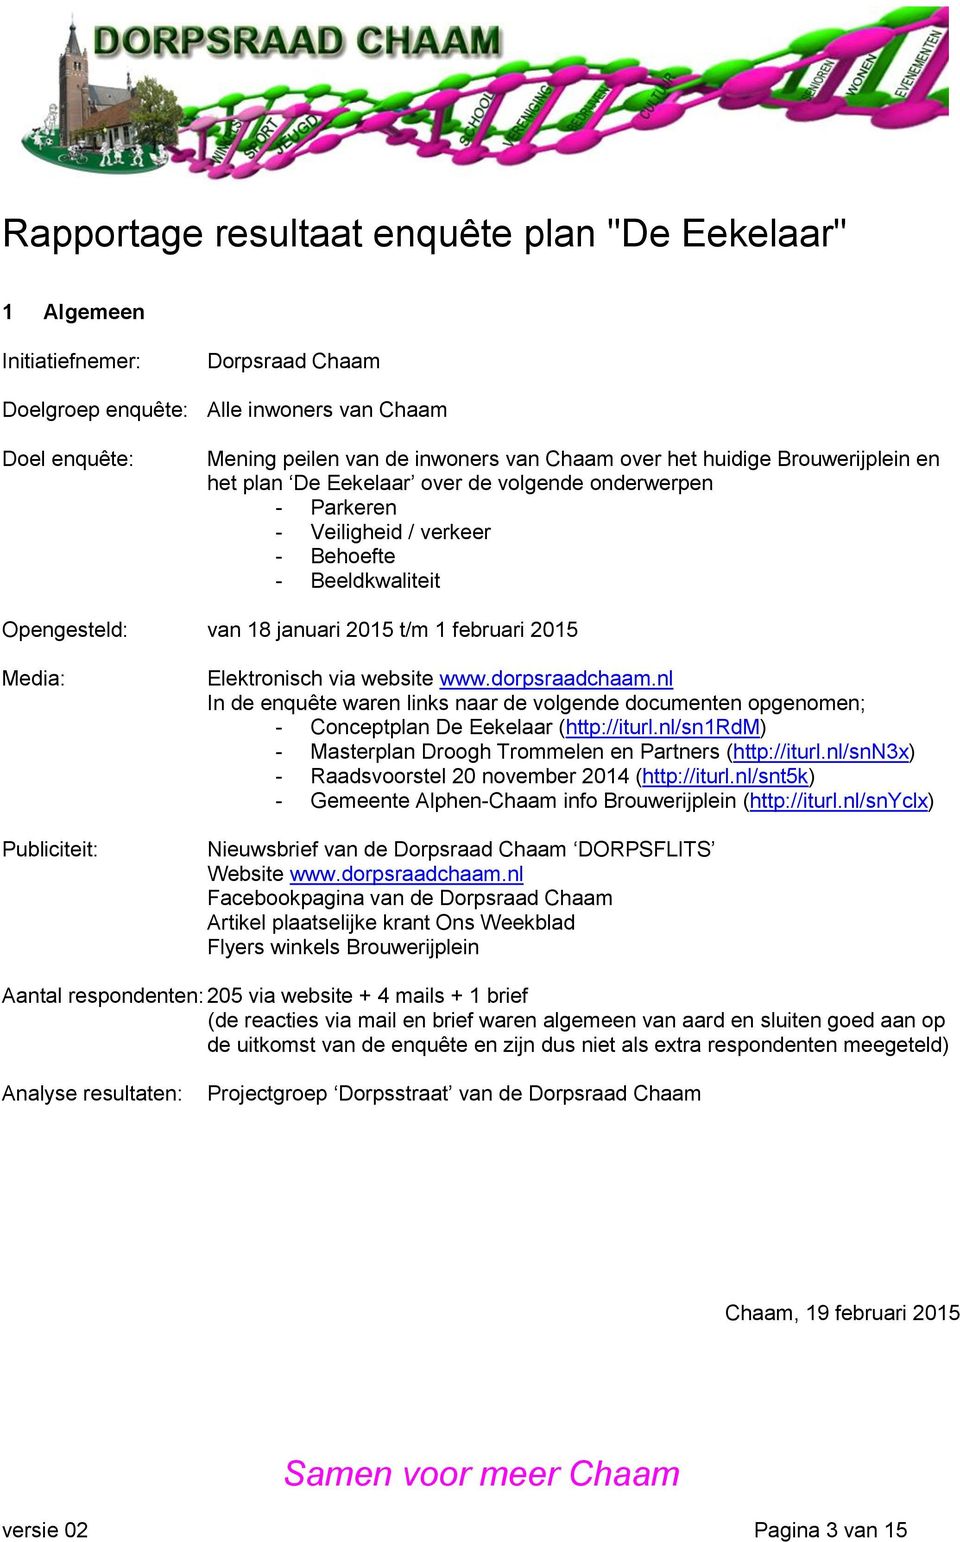 dorpsraadchaam.nl In de enquête waren links naar de volgende documenten opgenomen; - Conceptplan De Eekelaar (http://iturl.nl/sn1rdm) - Masterplan Droogh Trommelen en Partners (http://iturl.